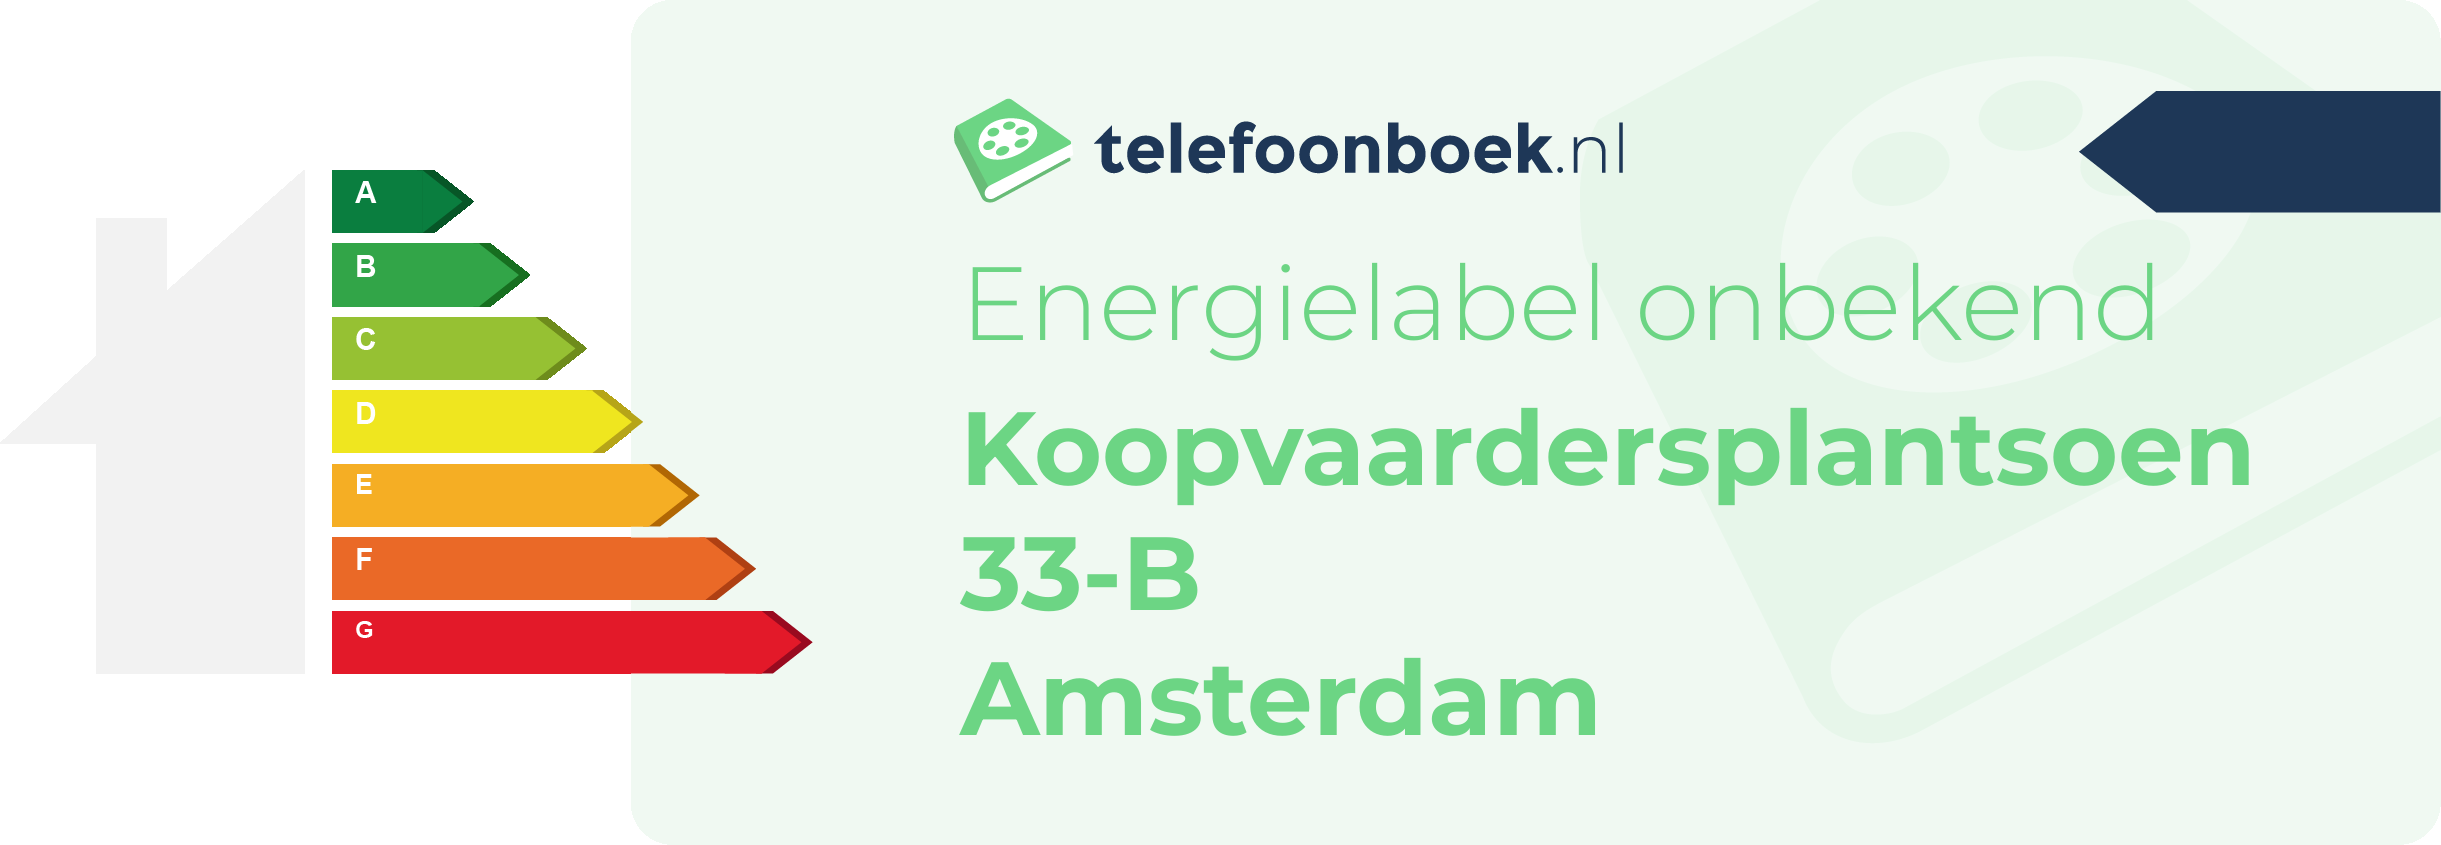 Energielabel Koopvaardersplantsoen 33-B Amsterdam